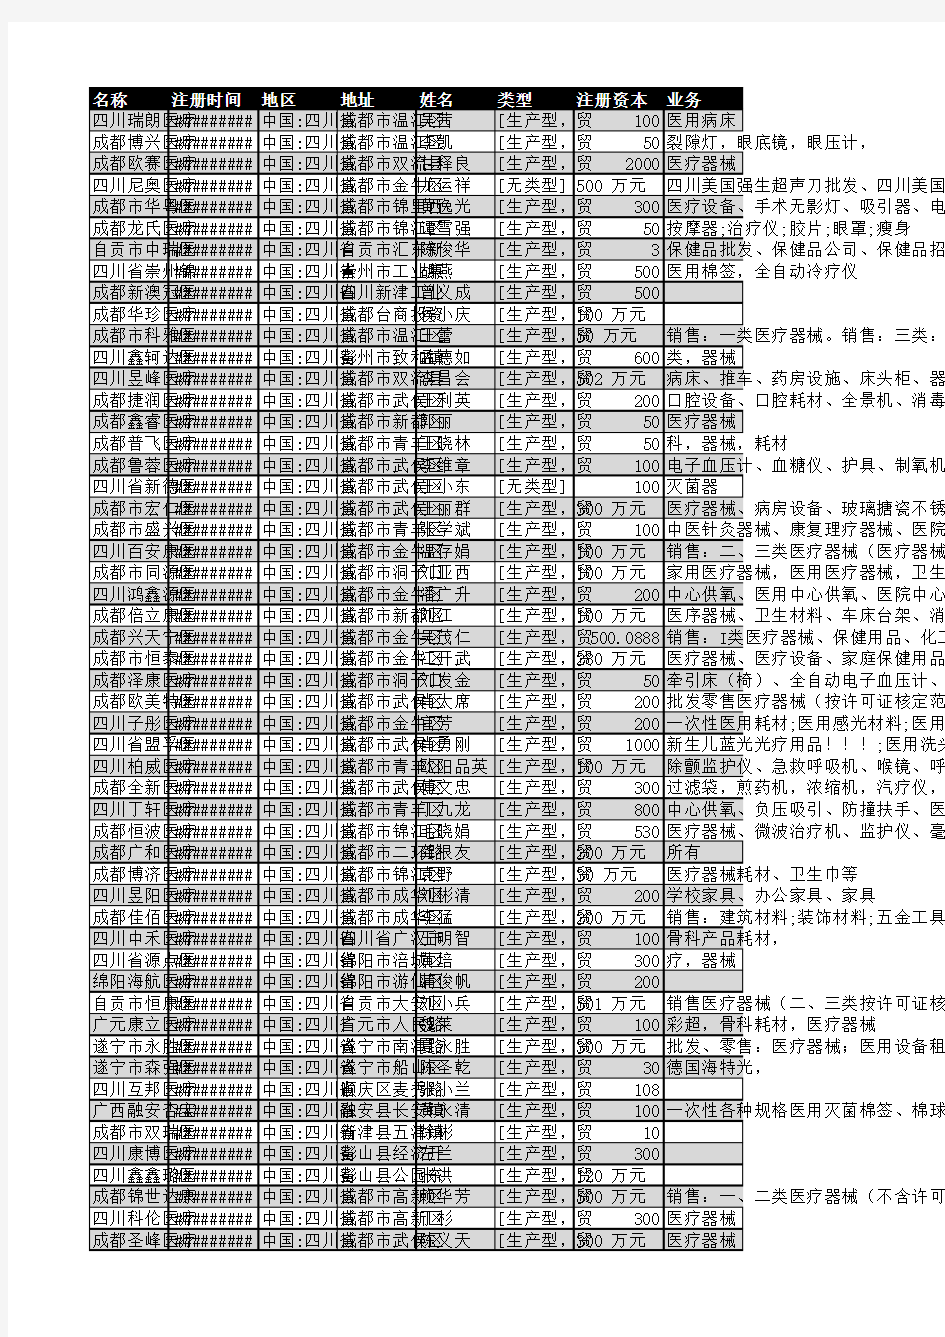 2018年四川省医疗器械行业企业名录1750家